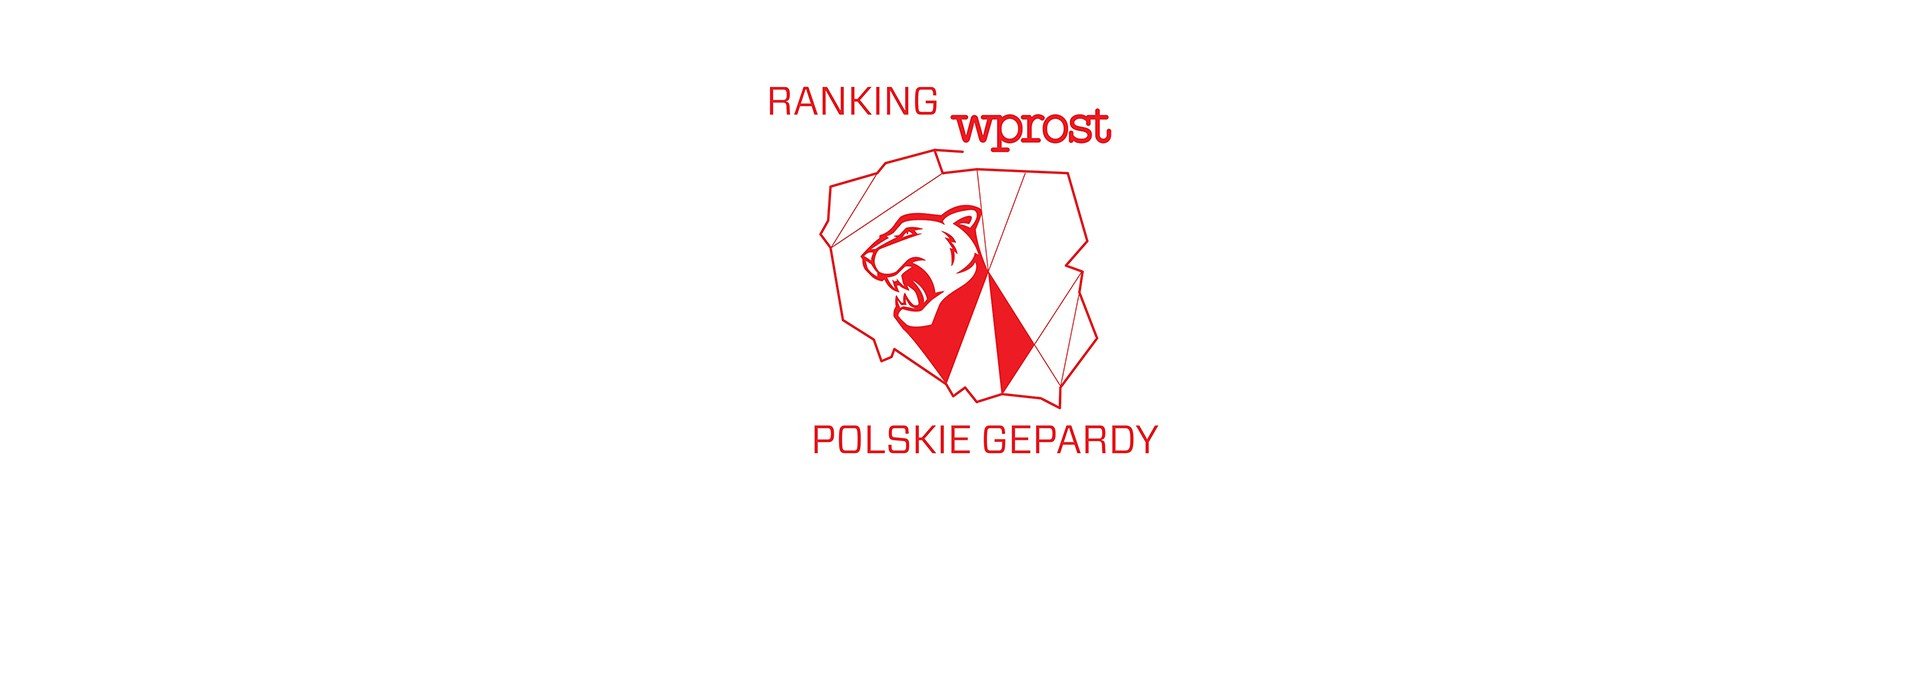 Drutex ve skupině 50 nejdynamičtěji se rozvíjejících polských firem